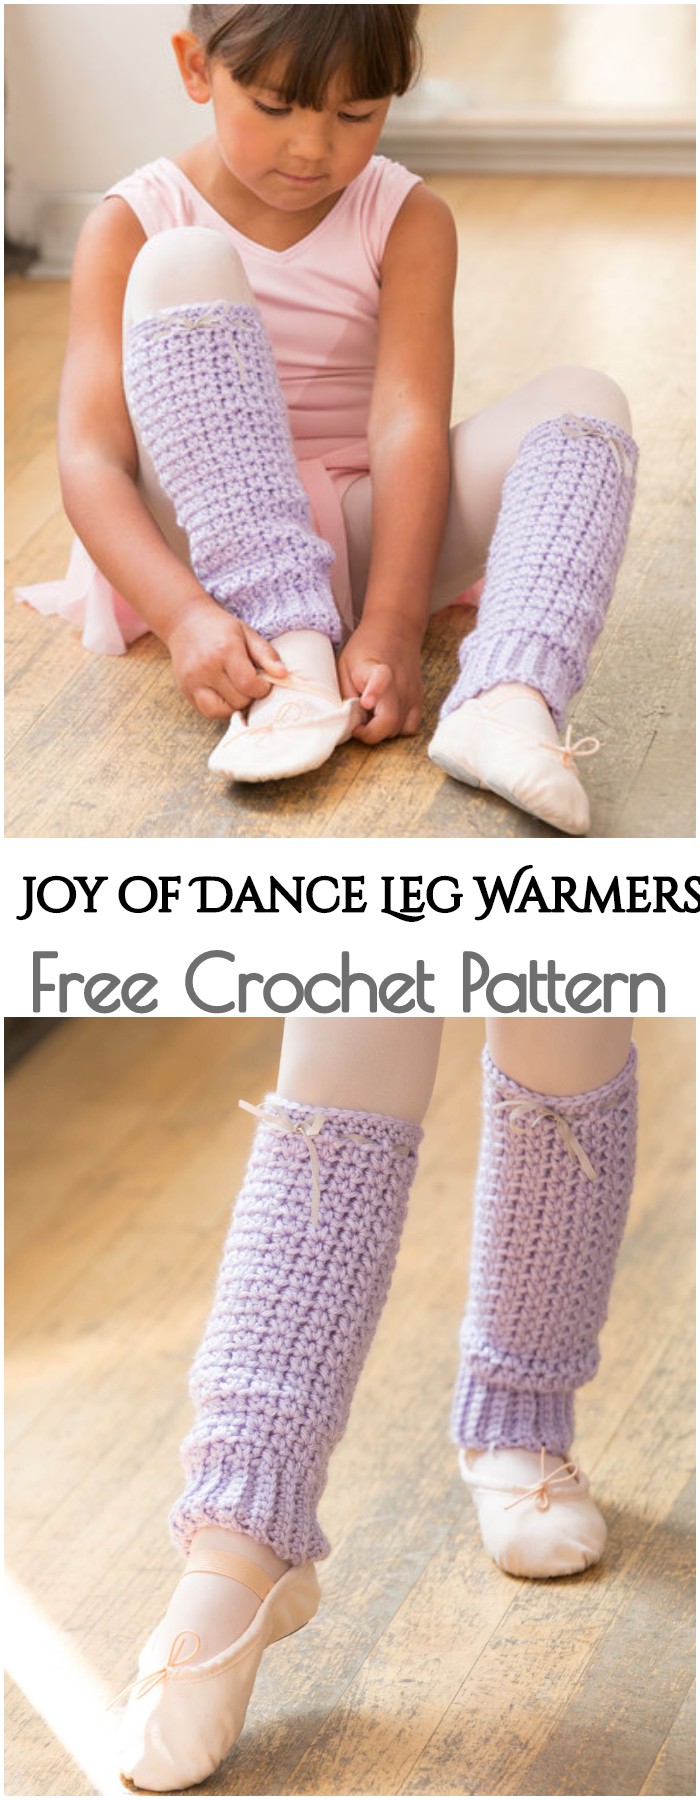 Crochet Joy of Dance Leg Warmers